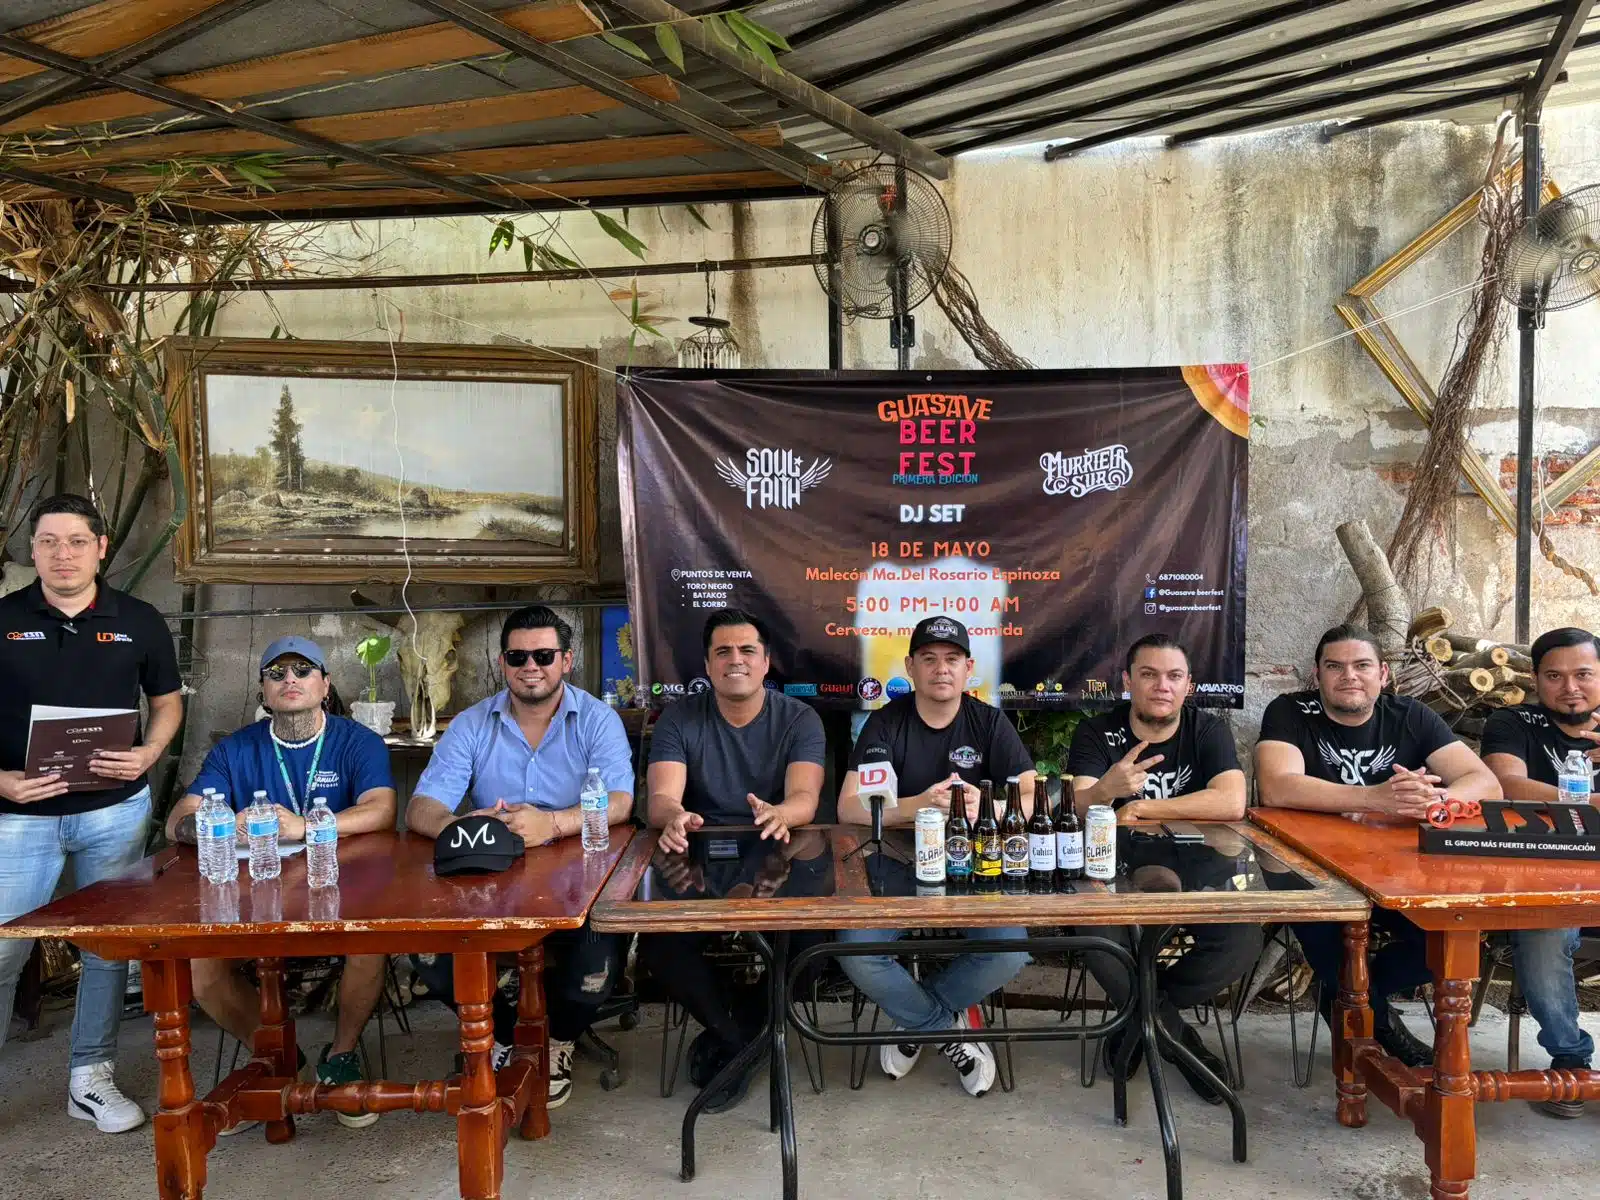 Conferencia de prensa para anunciar el primer Guasave Beer Fest